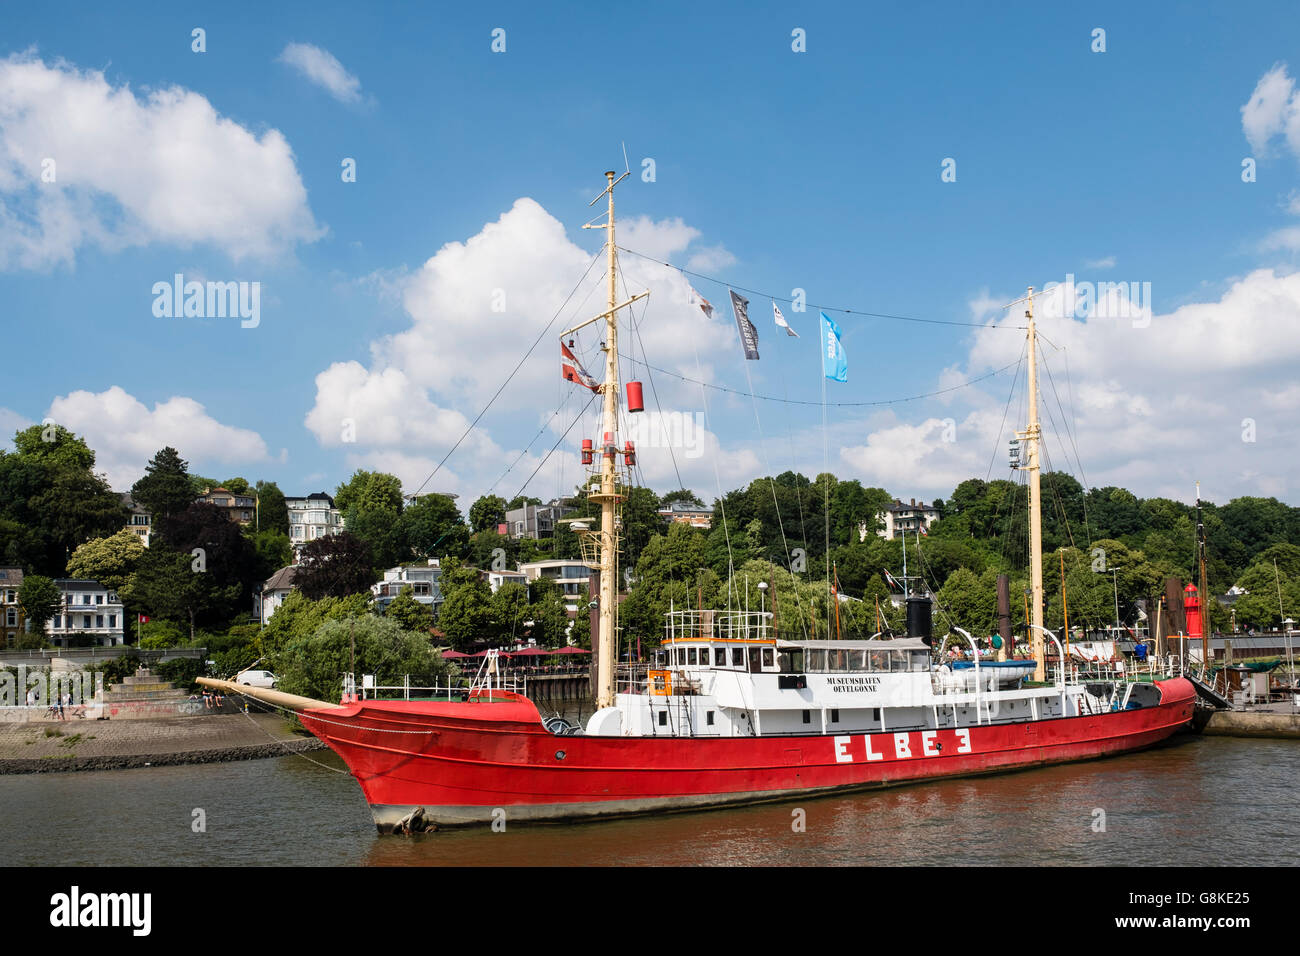 Historischen Feuerschiff Elbe 3 Schiff vertäut im Maritime Museum in Ovelgonne auf der Elbe in Hamburg Deutschland Stockfoto